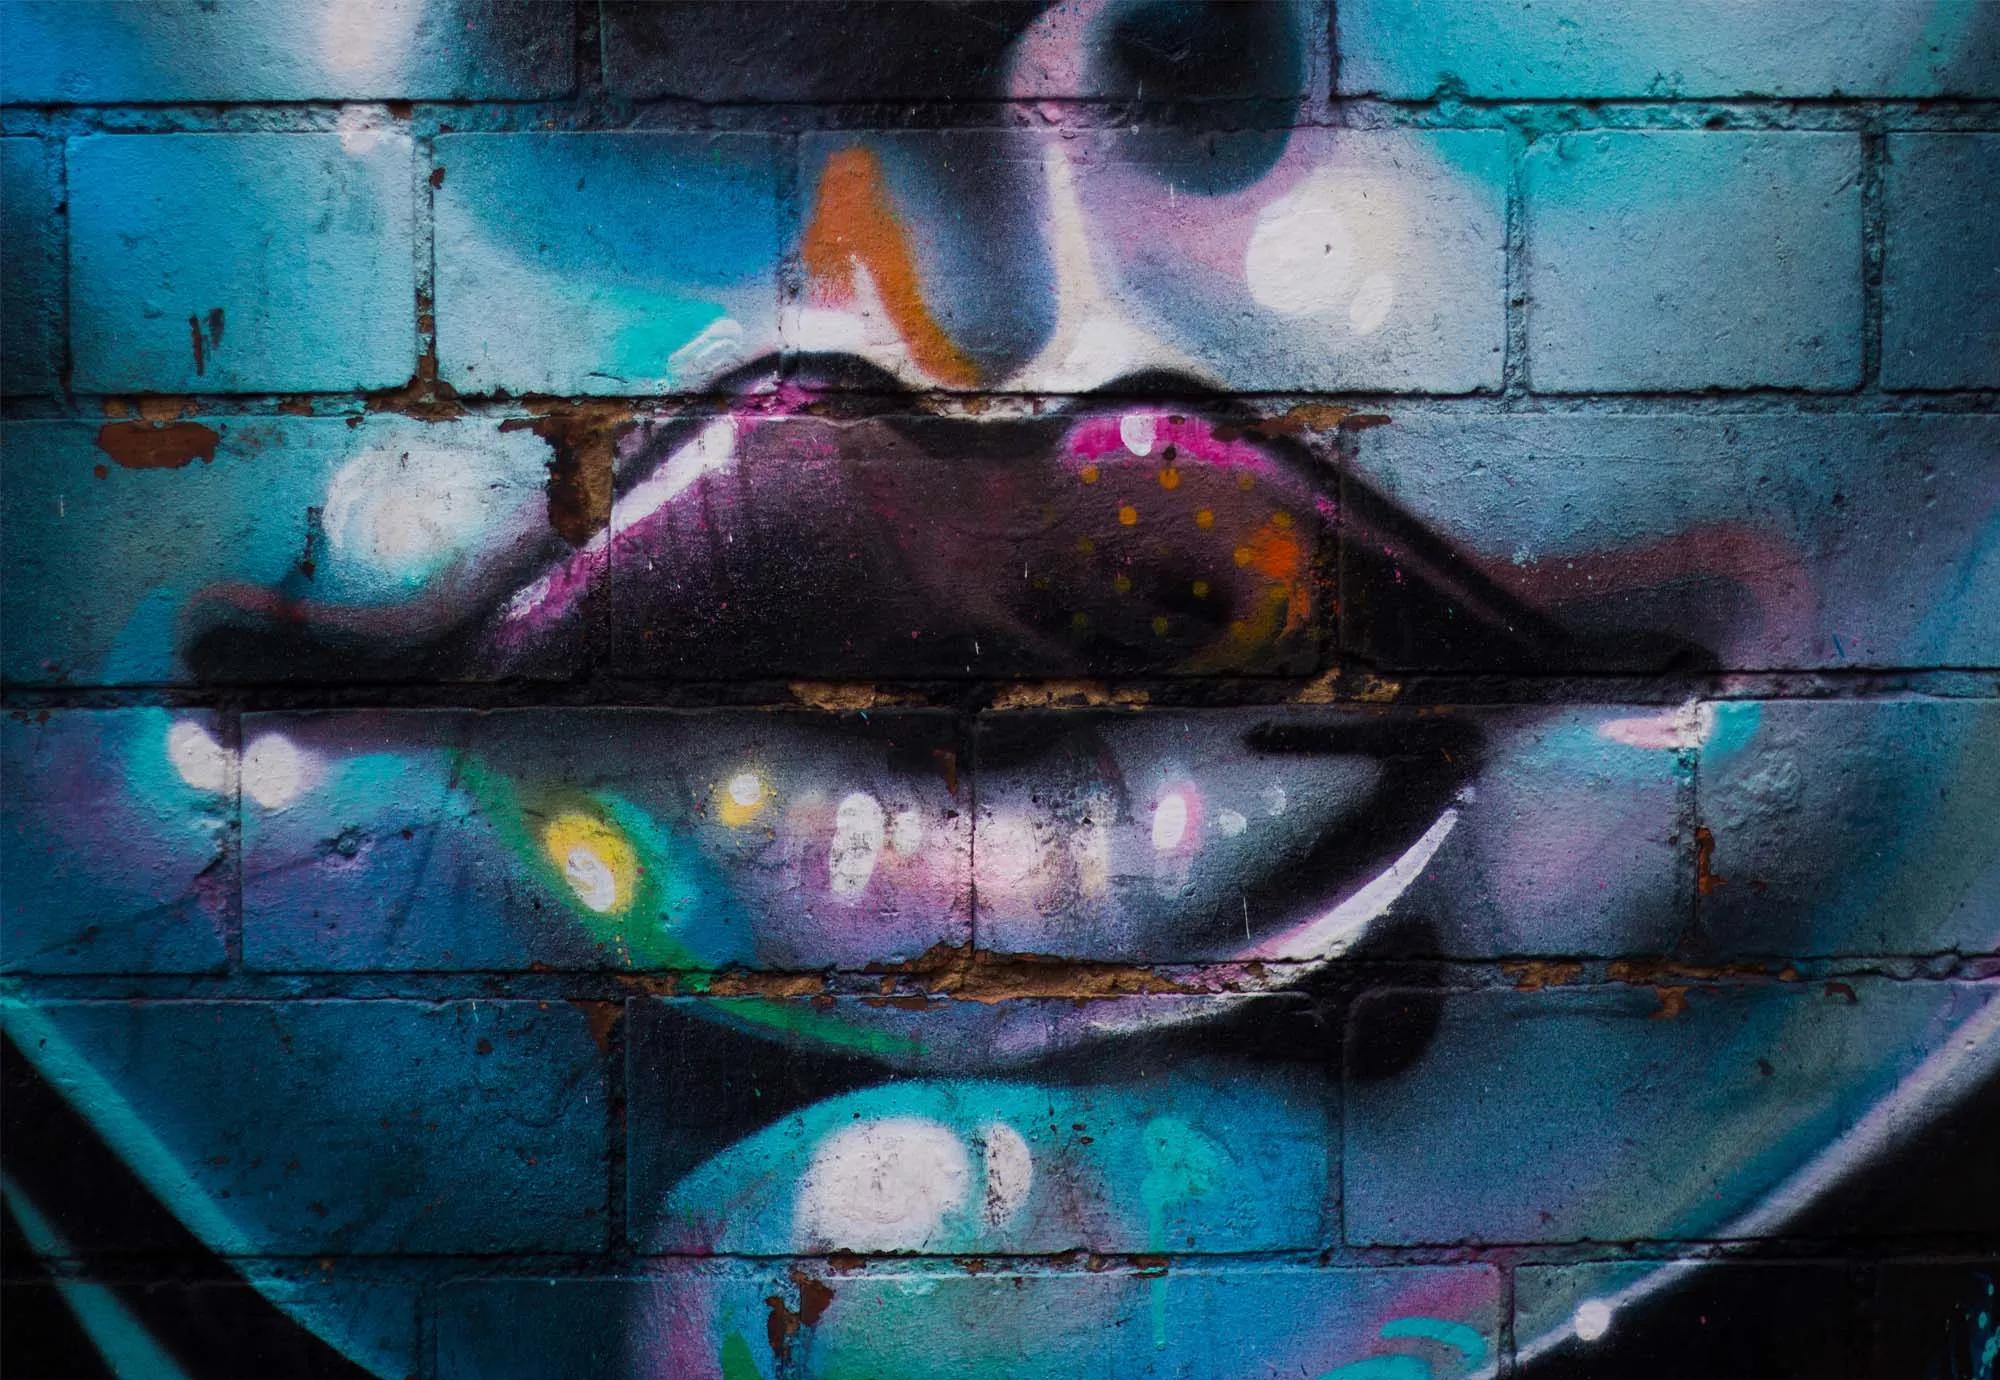 Fali poszter graffiti stílusban női száj mintával